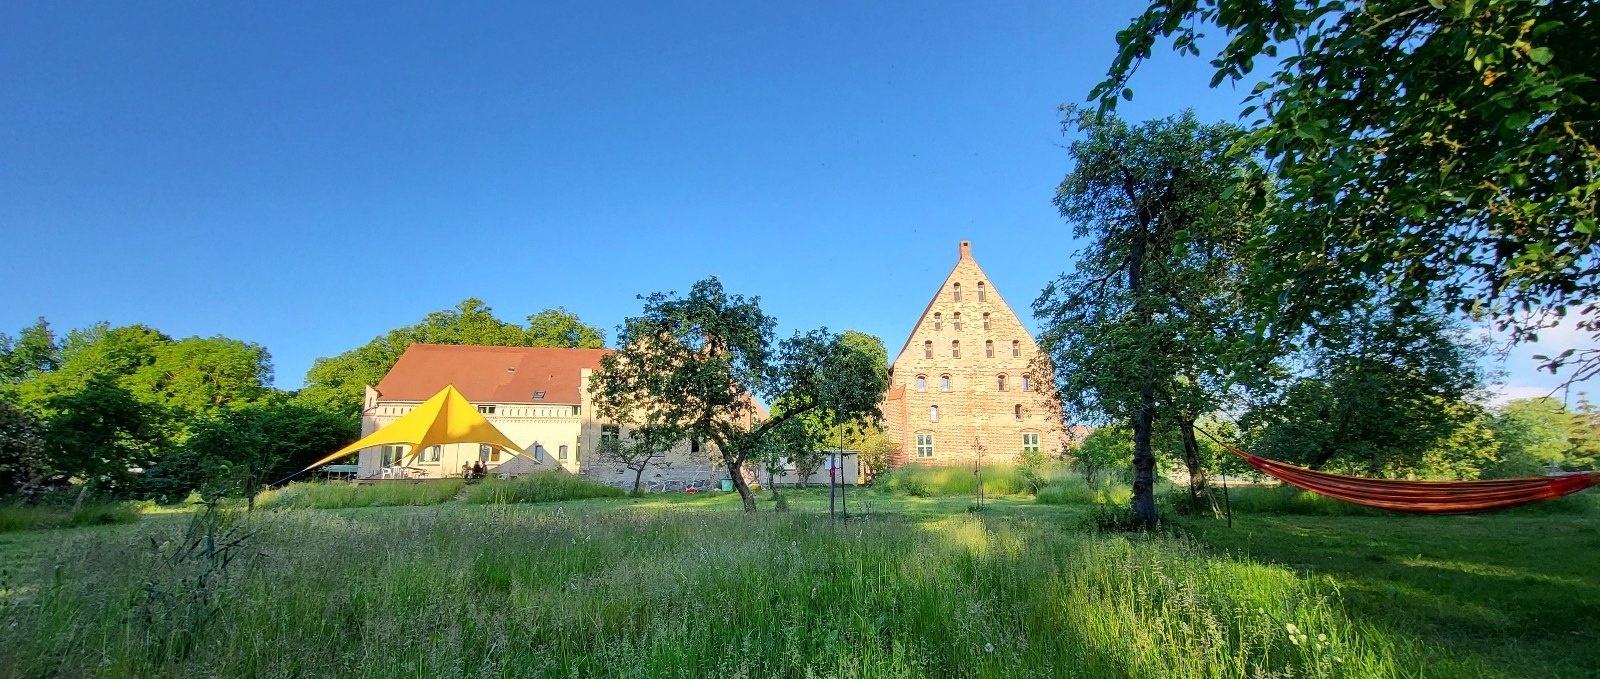 Pilgerkloster Tempzin2, © Tourismusverband Mecklenburg-Schwerin